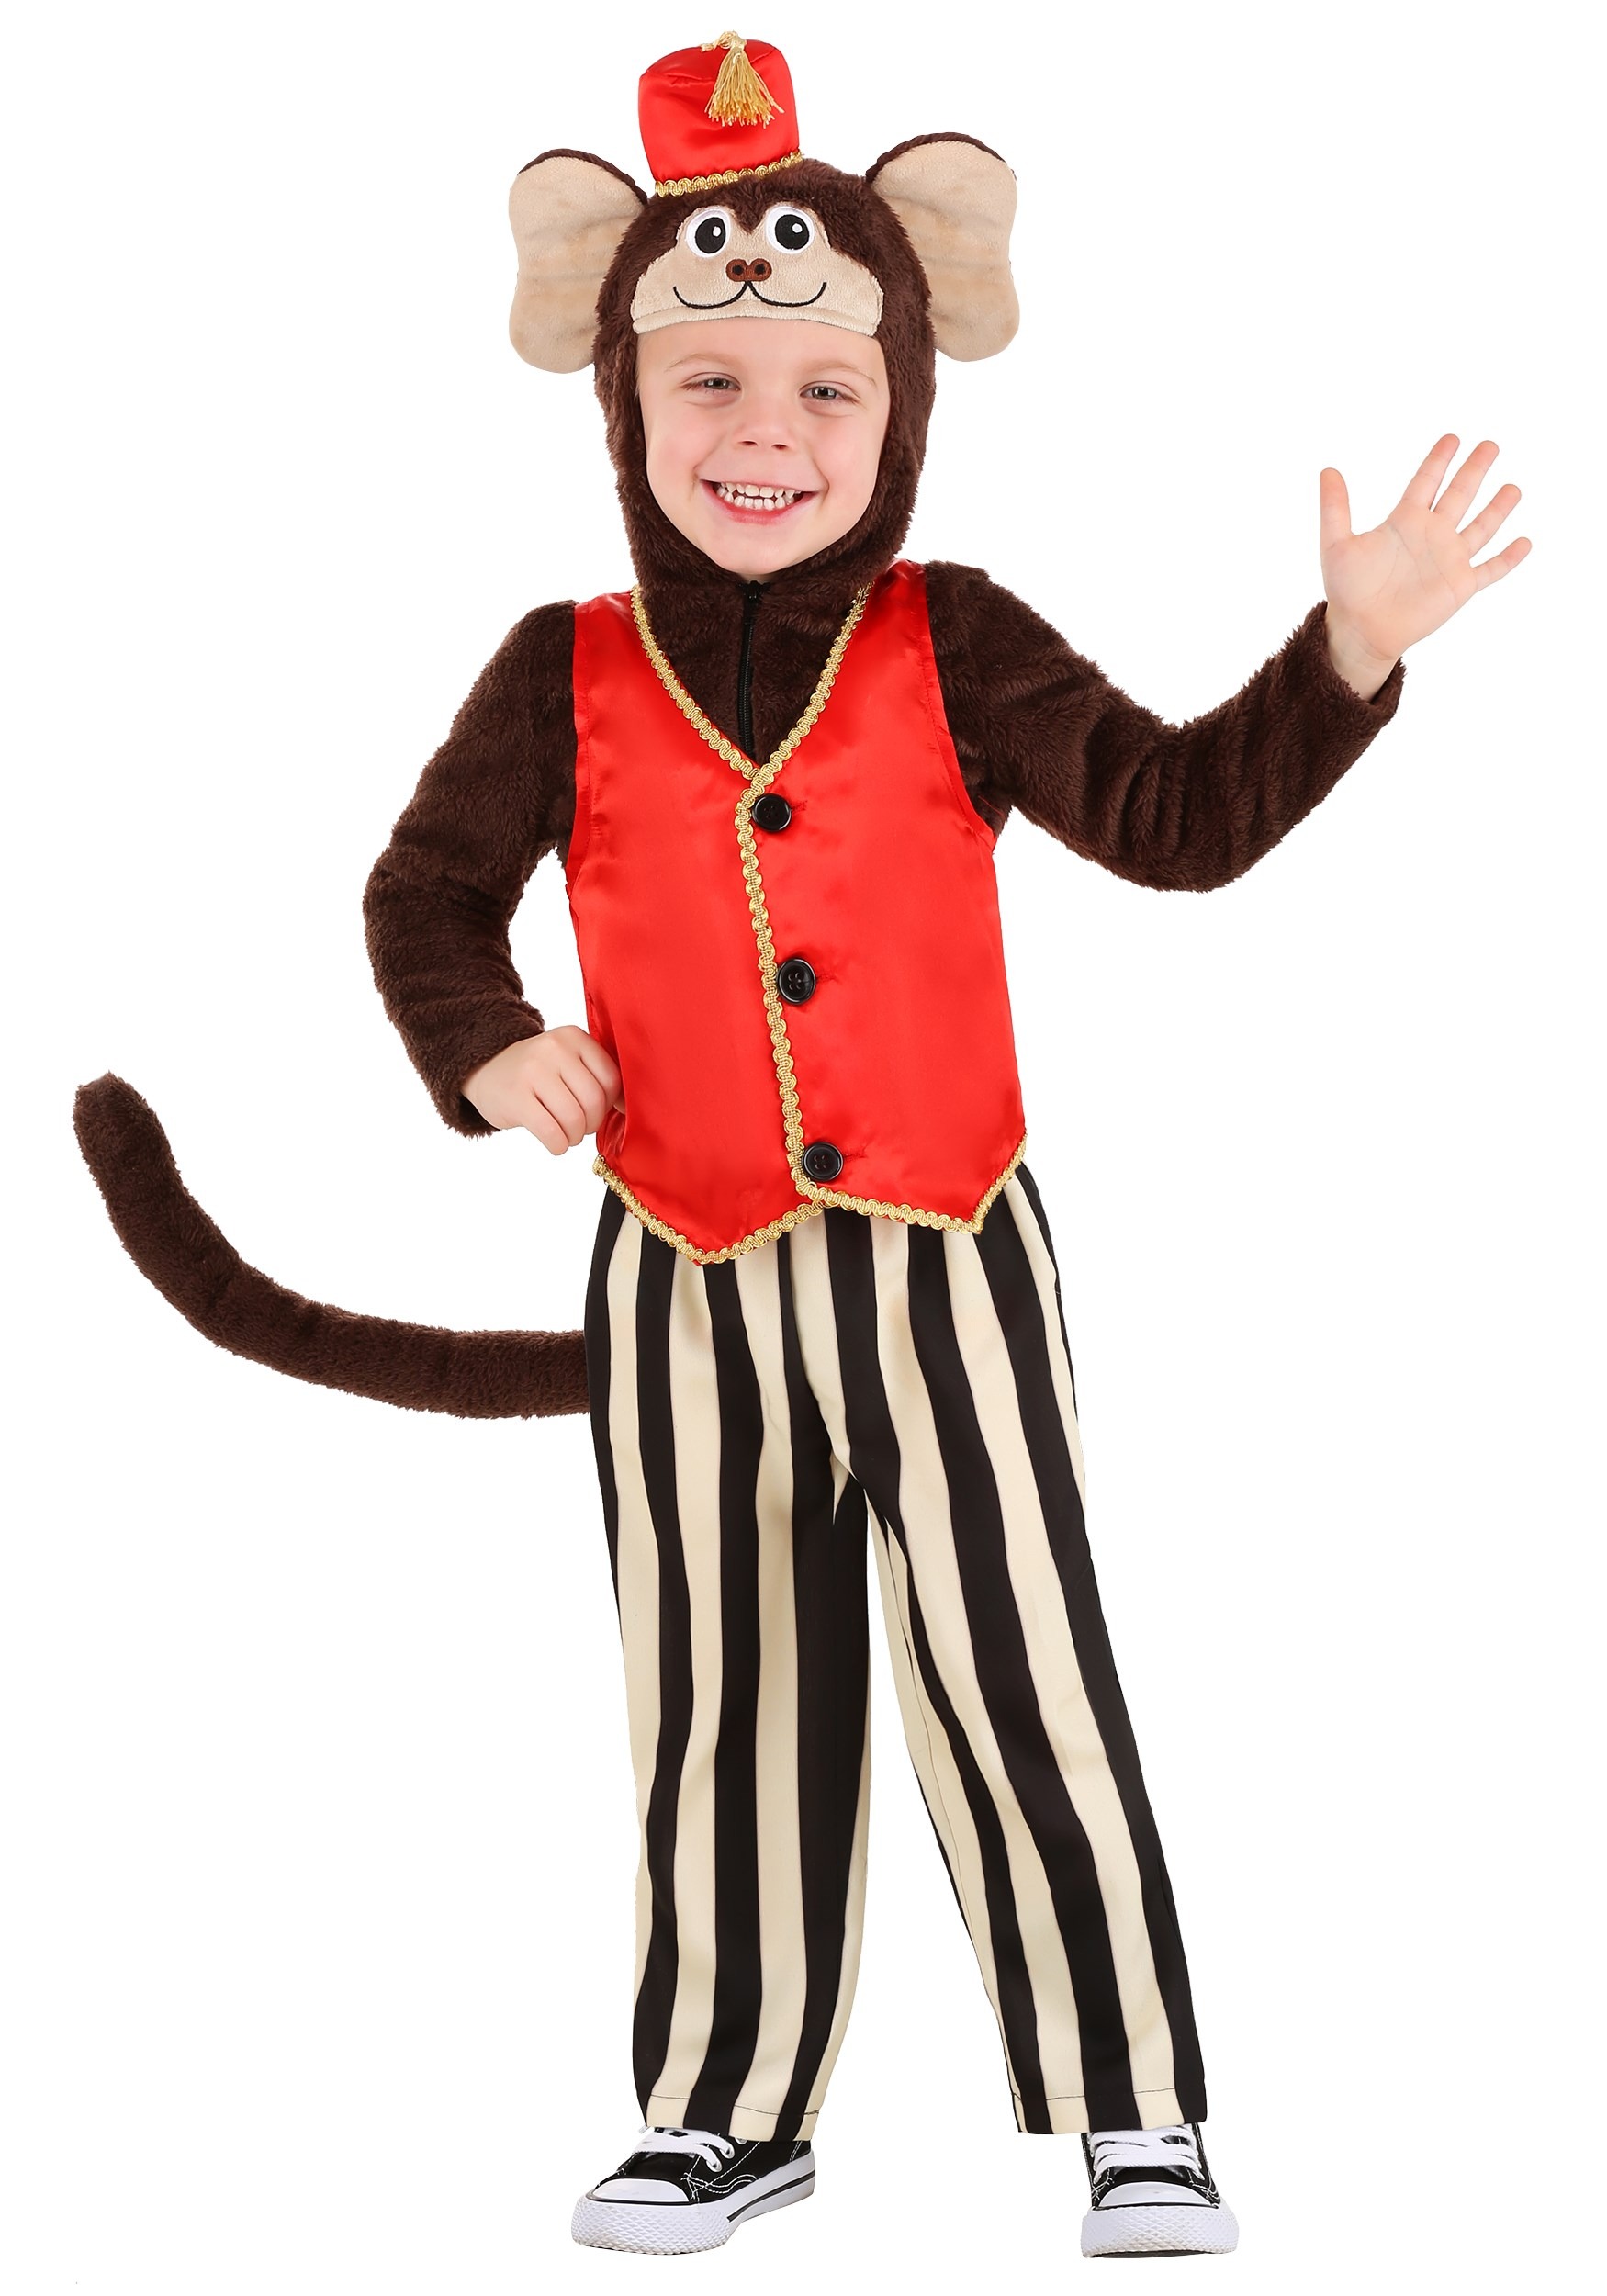 Photos - Fancy Dress Toddler FUN Costumes Circus Monkey Costume for Toddlers | Circus Costumes Brown 